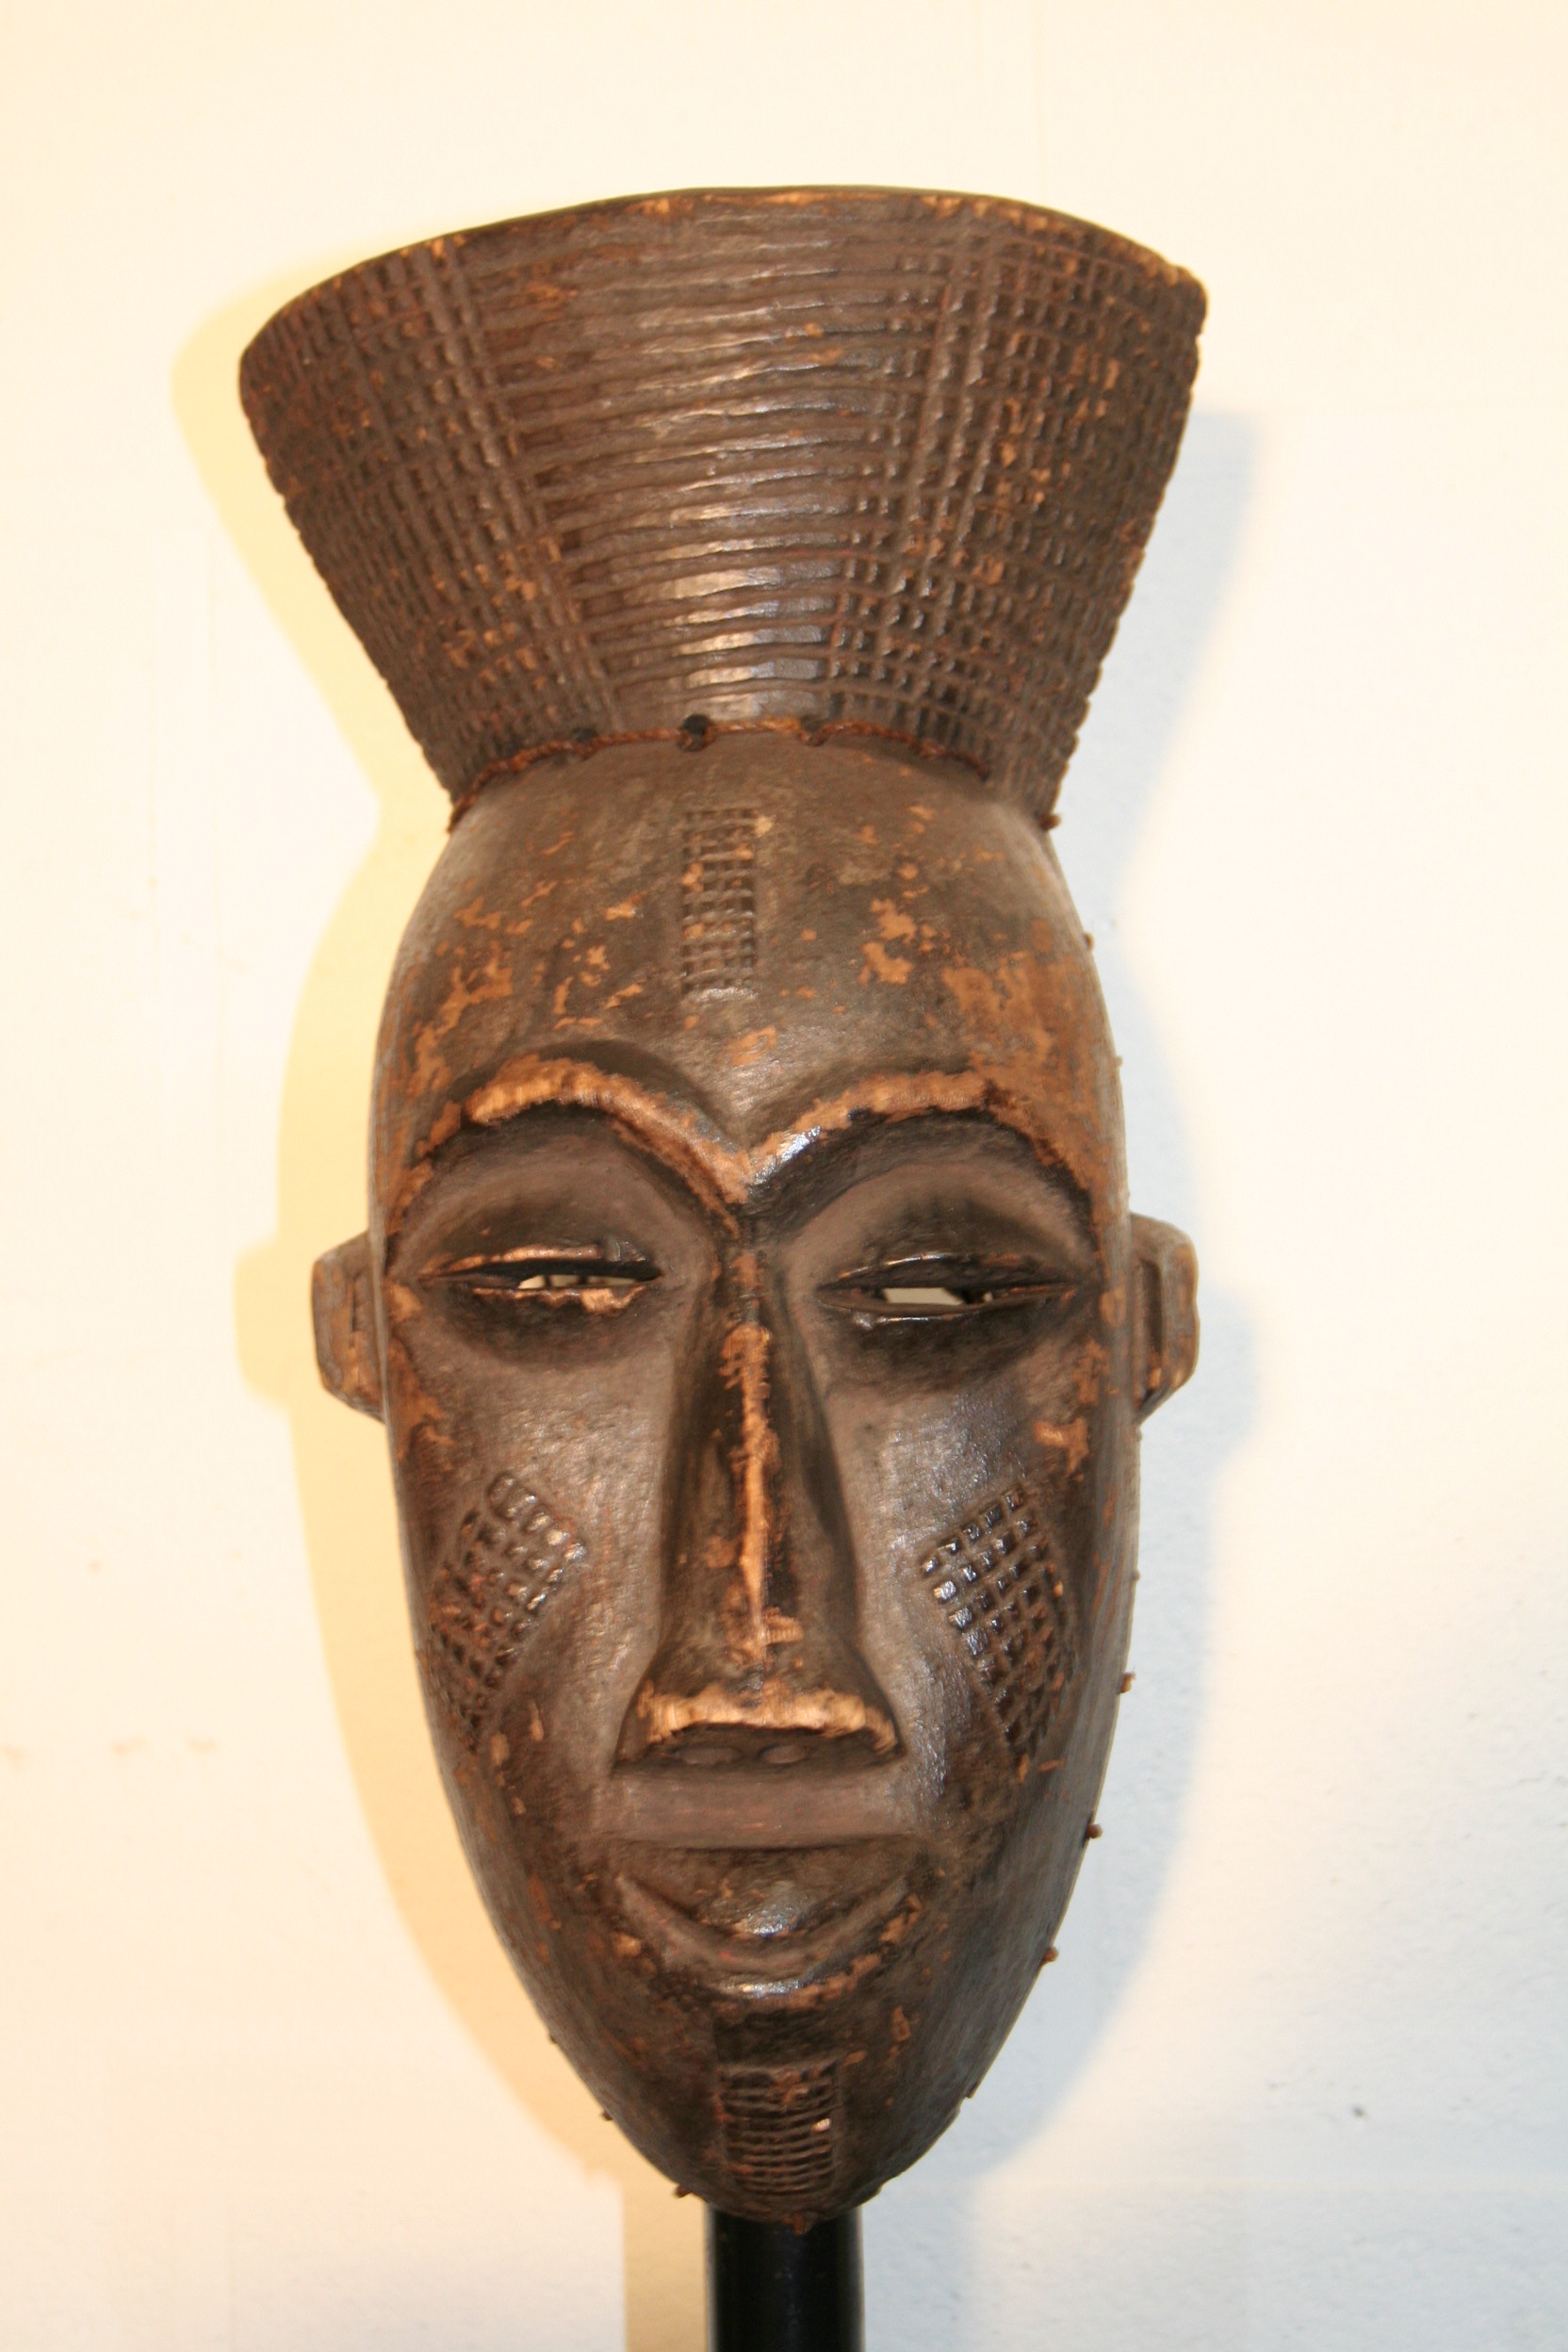 tchokwe(masque), d`afrique : R.d. du Congo, statuette tchokwe(masque), masque ancien africain tchokwe(masque), art du R.d. du Congo - Art Africain, collection privées Belgique. Statue africaine de la tribu des tchokwe(masque), provenant du R.d. du Congo, 1634:Masque tchokwe,la tête surmontée d